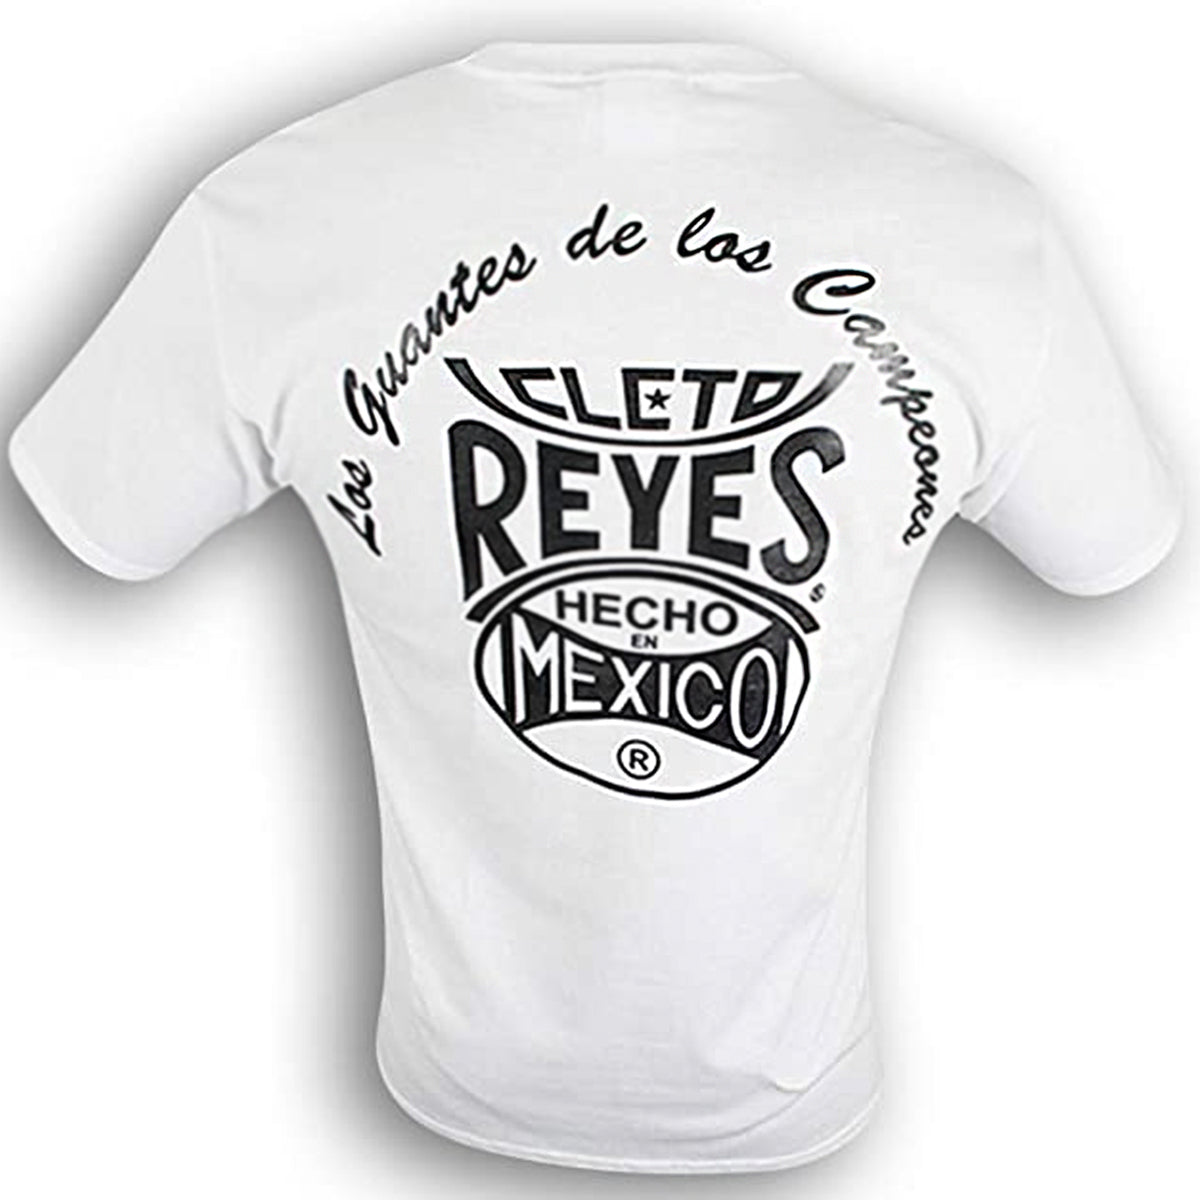 Cleto Reyes Champy T-Shirt - Small - White Cleto Reyes